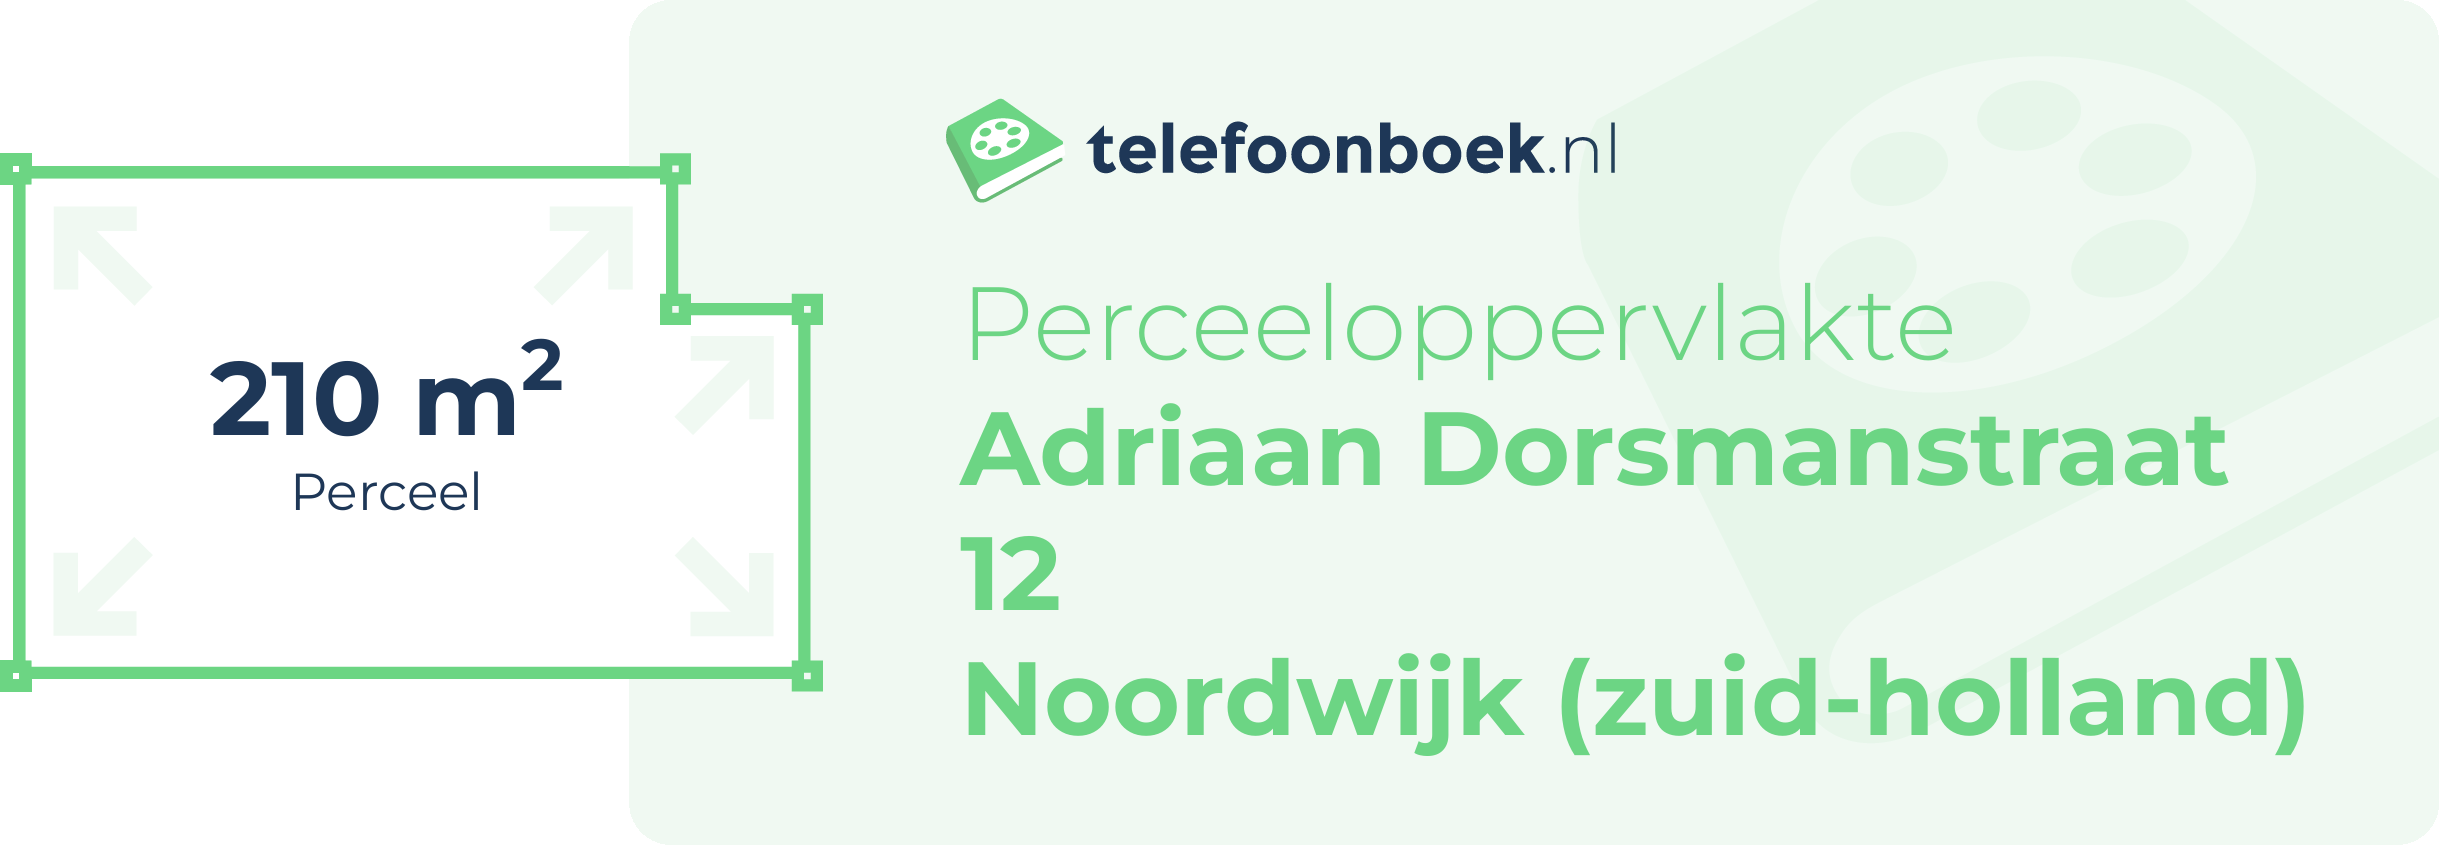 Perceeloppervlakte Adriaan Dorsmanstraat 12 Noordwijk (Zuid-Holland)